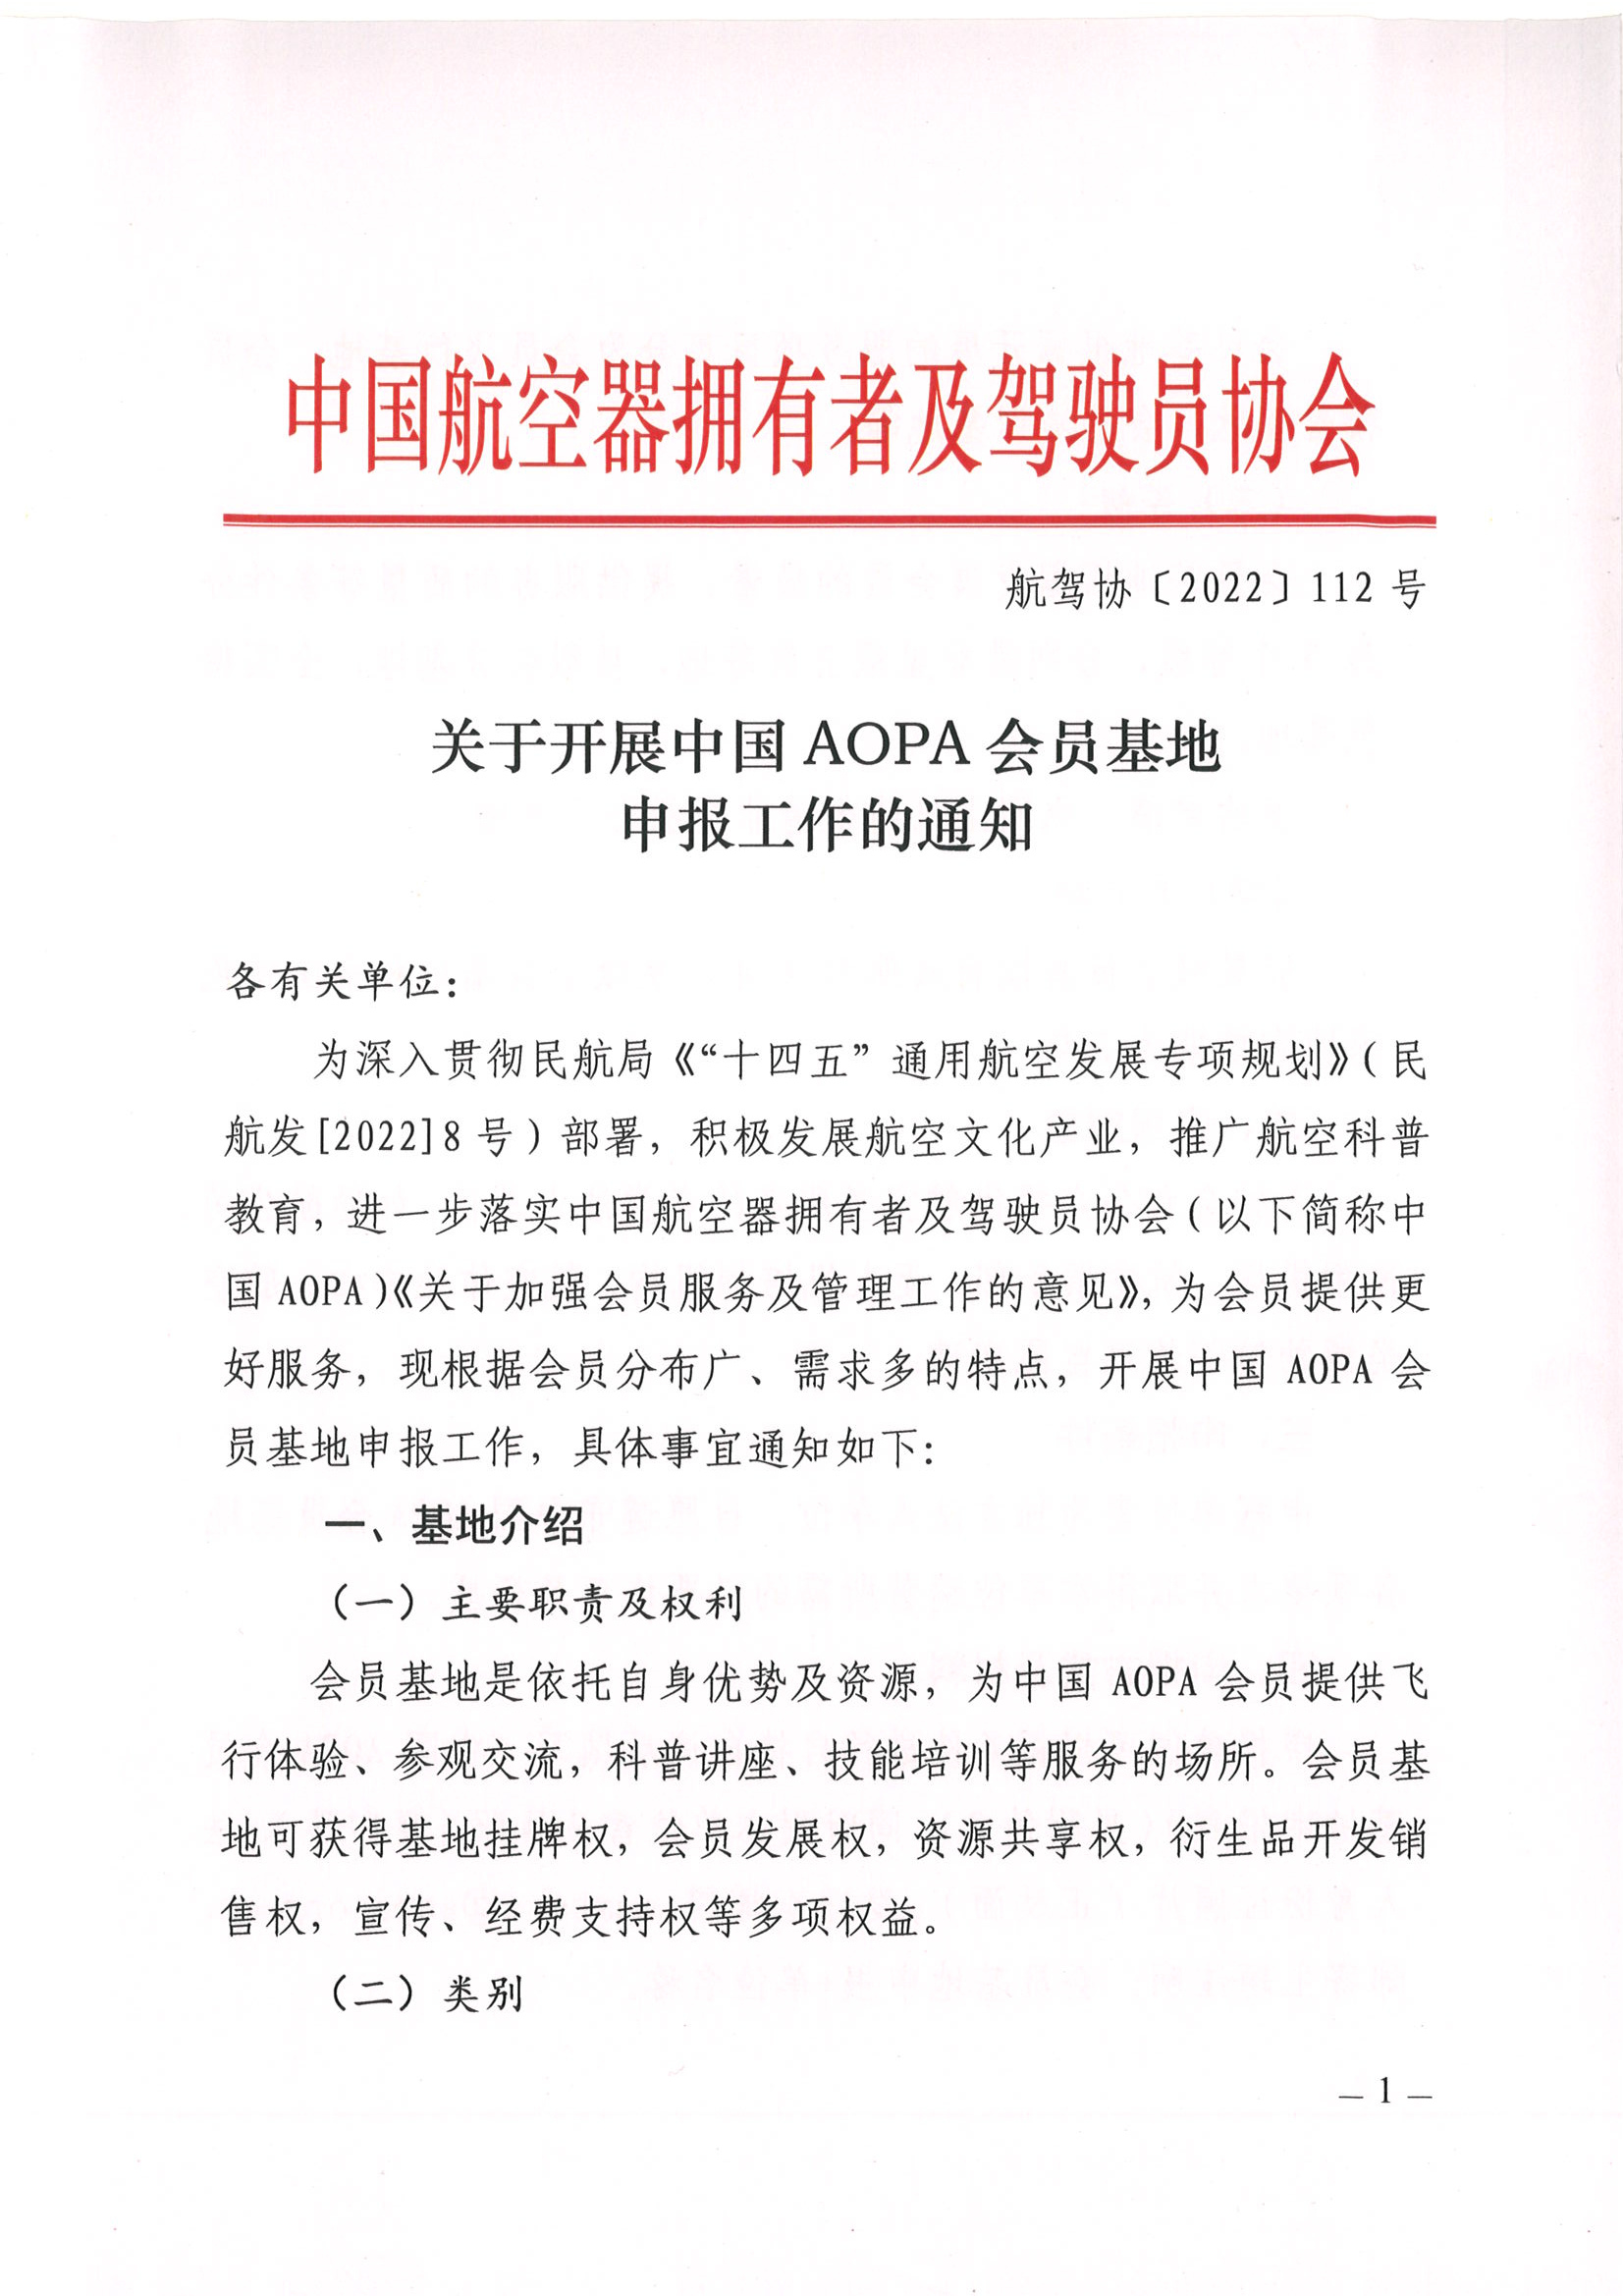 关于开展“中国AOPA会员基地”申报工作的通知_页面_1.jpg